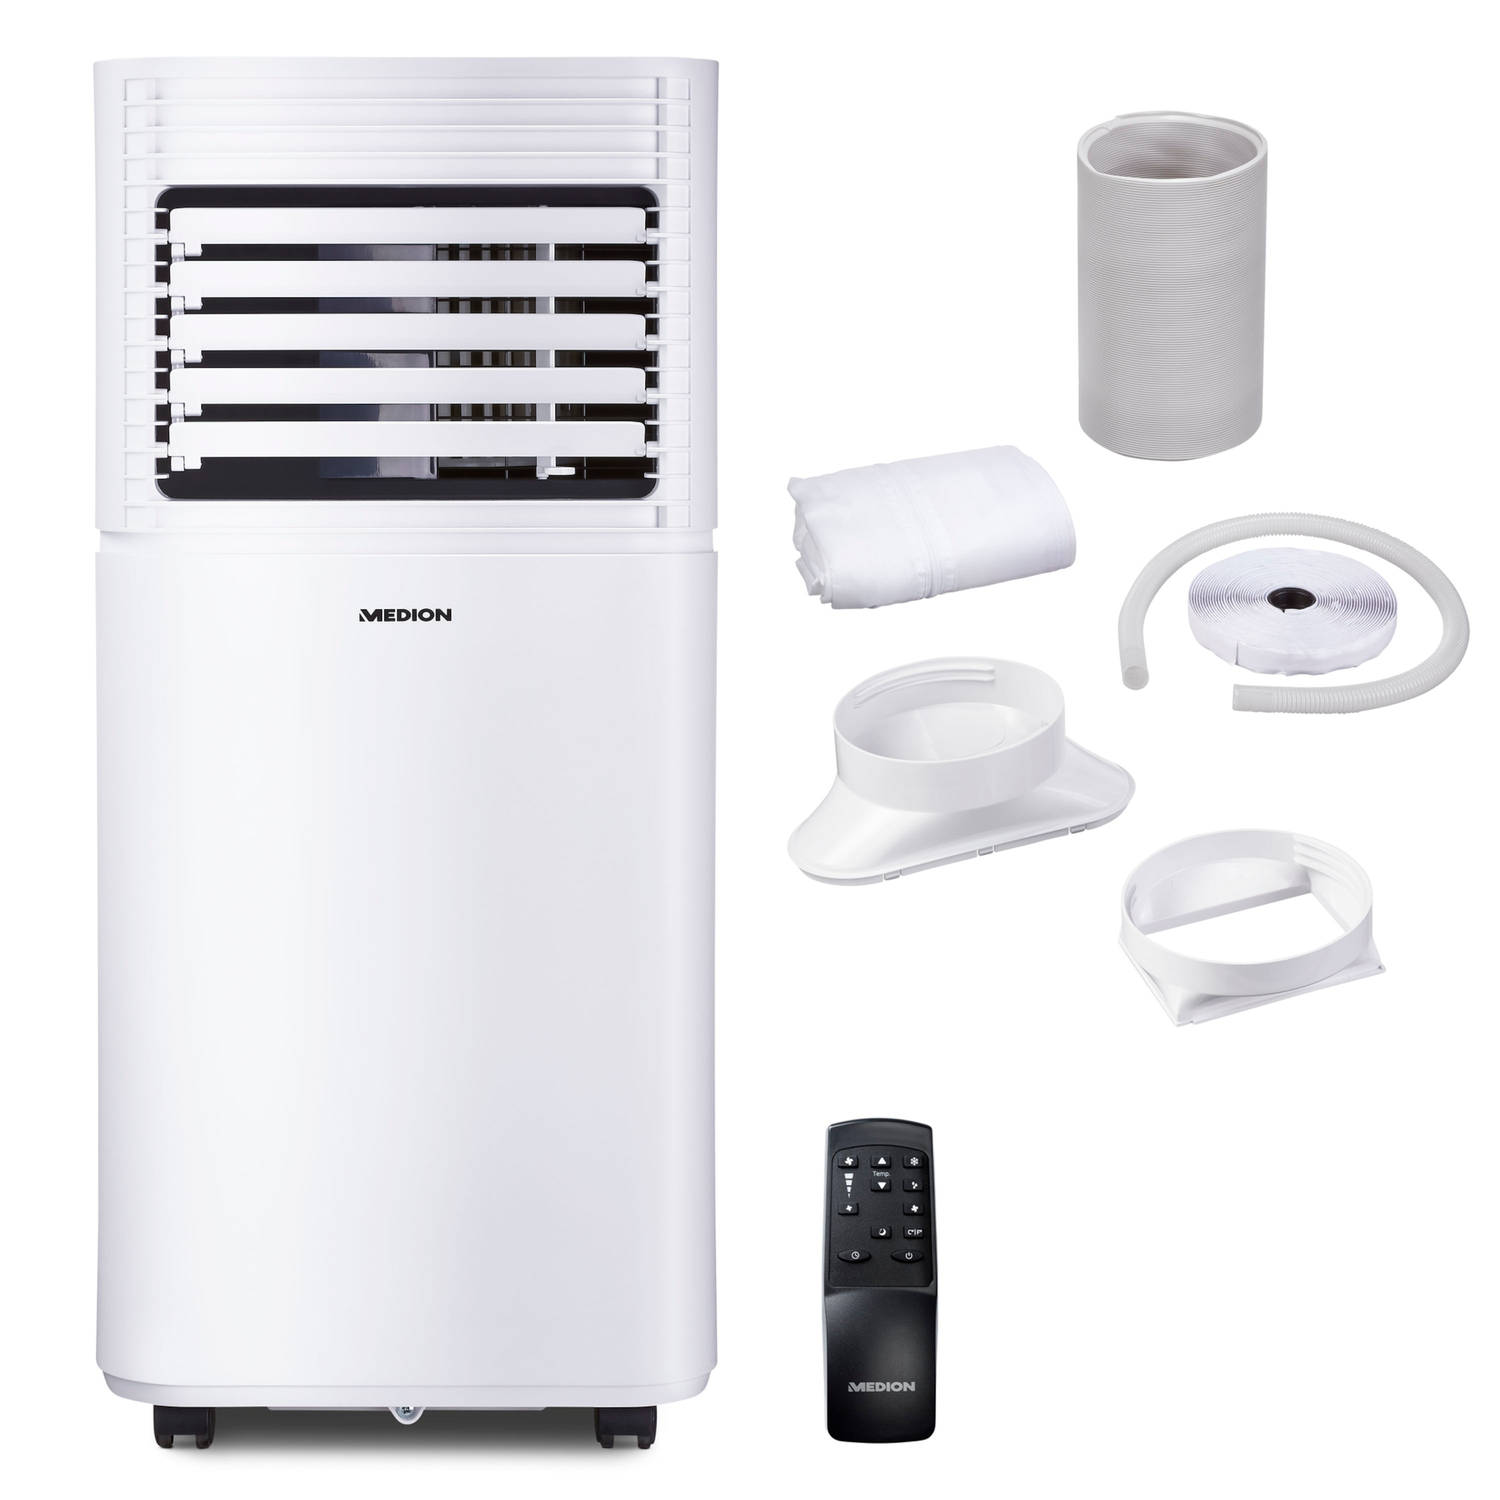 Medion Mobiele Airconditioner Md 37387 Energie-efficiëntieklasse A Koelen, Ontvochtigen En Ventileren